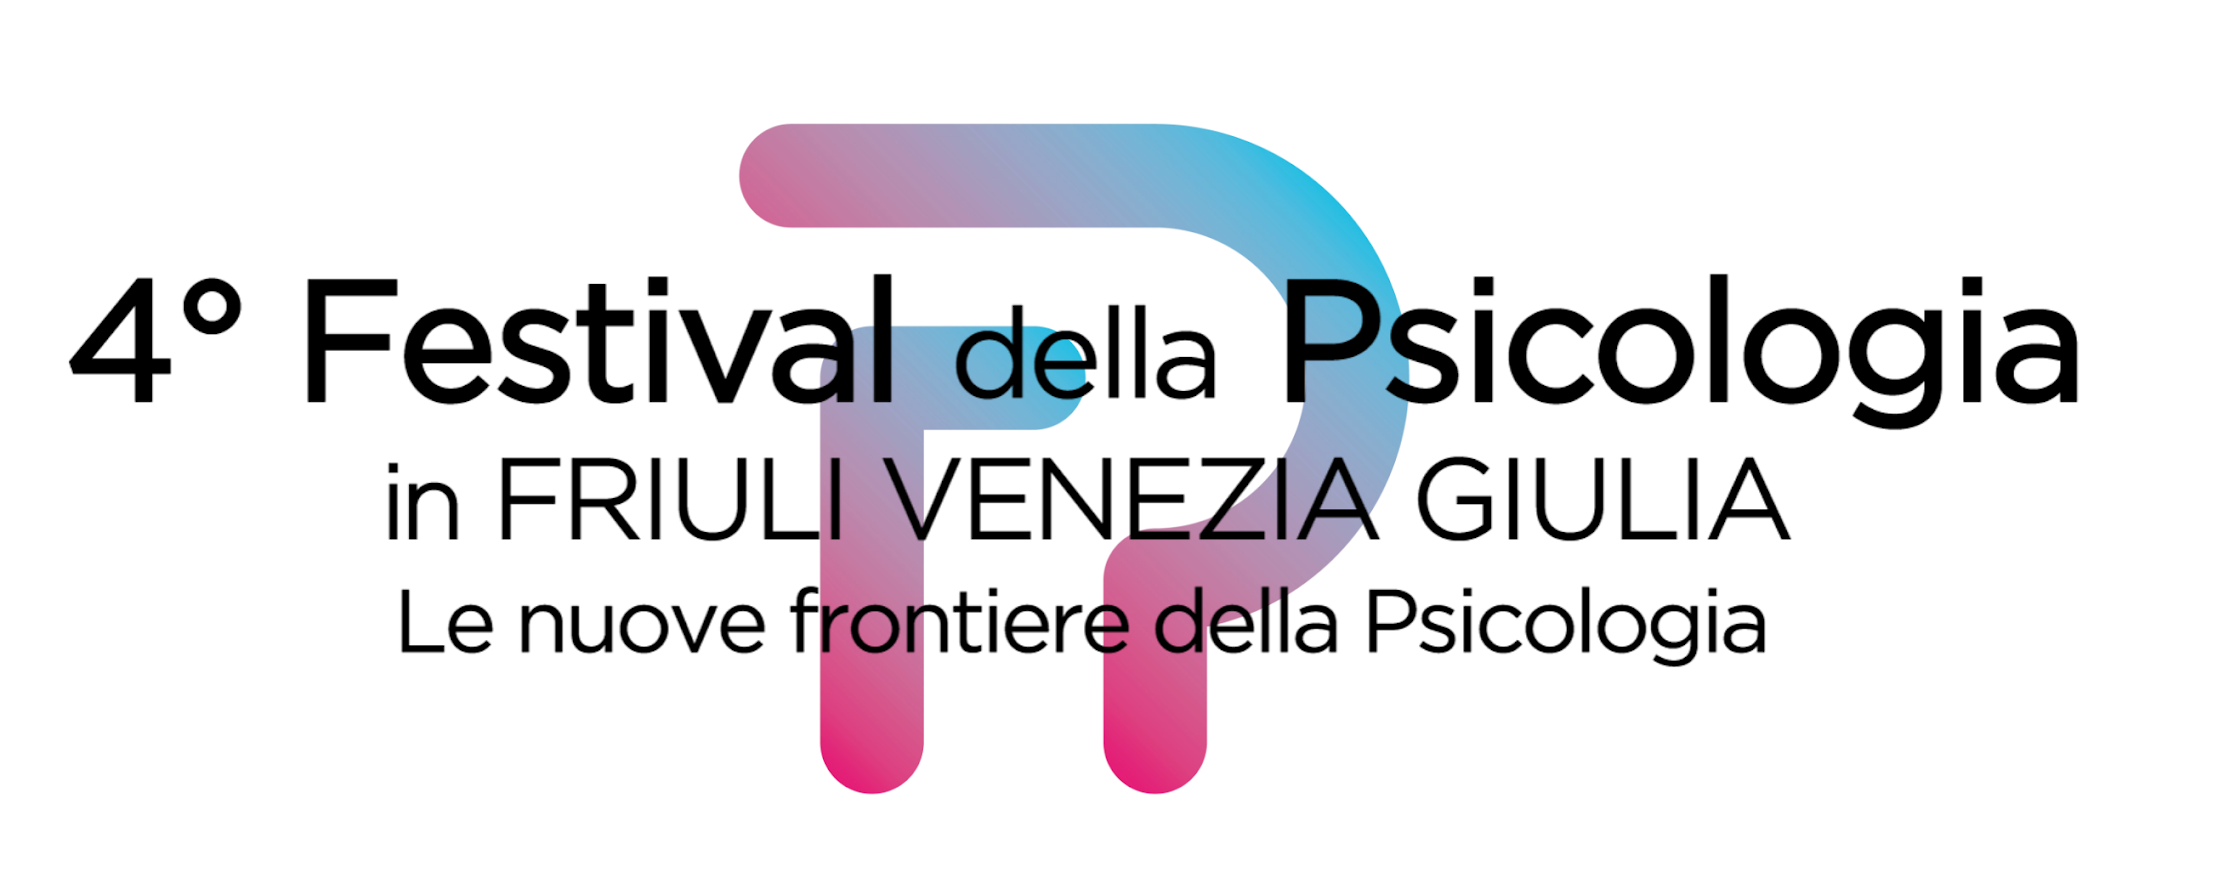 4° Festival della Psicologia in Friuli Venezia Giulia: aperto il bando per il PREMIO RICERCHE INNOVATIVE, scadenza il 1° febbraio